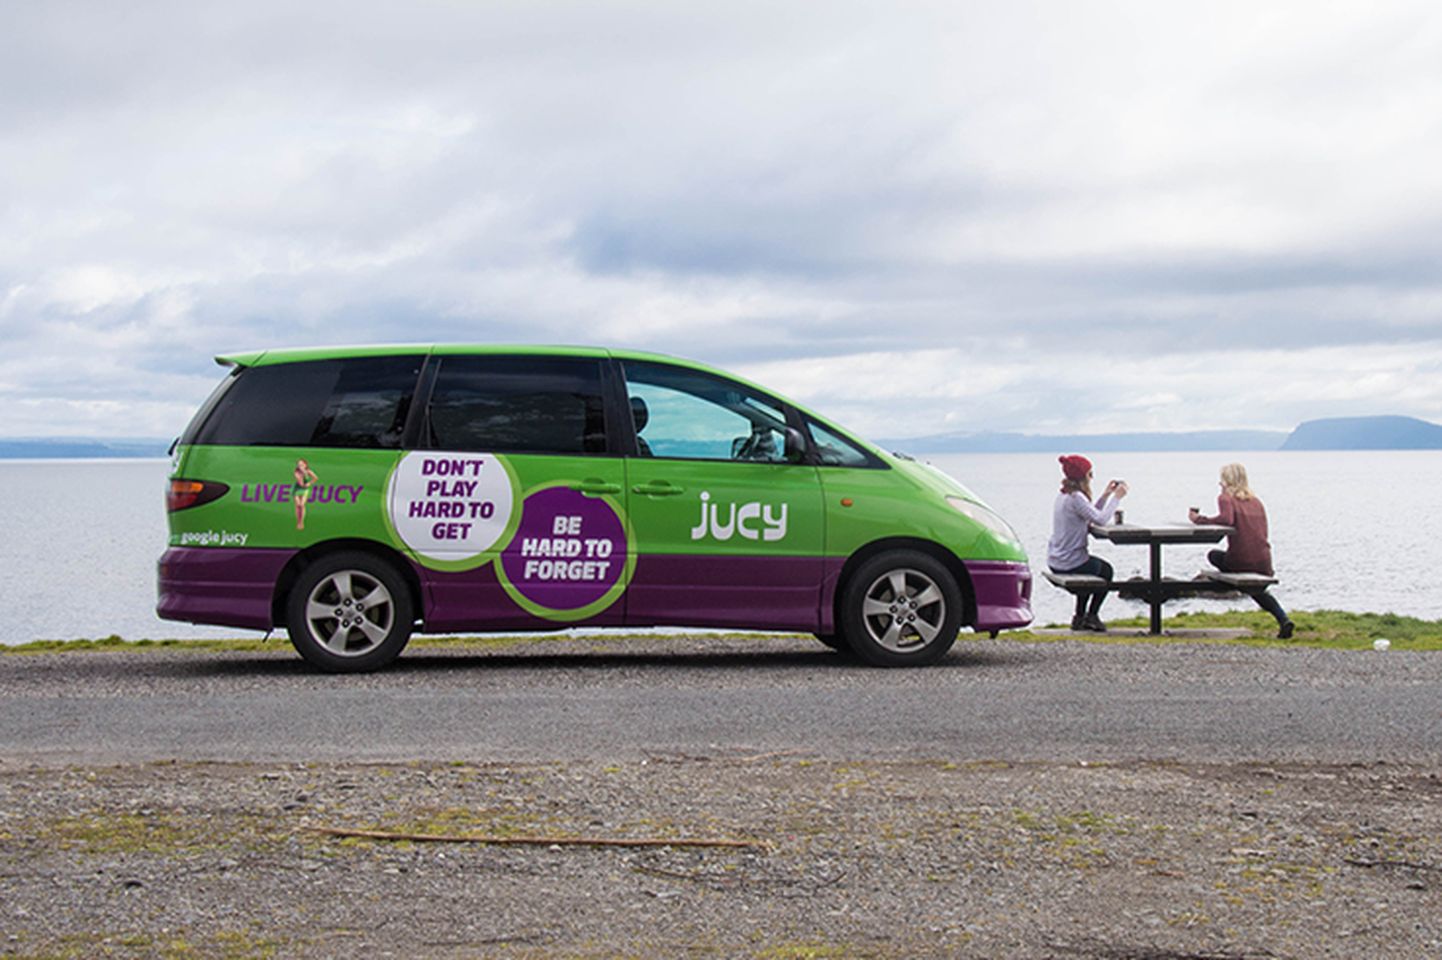 Uus-Meremaa auto- ja matkabusside rendifirma sõiduk.